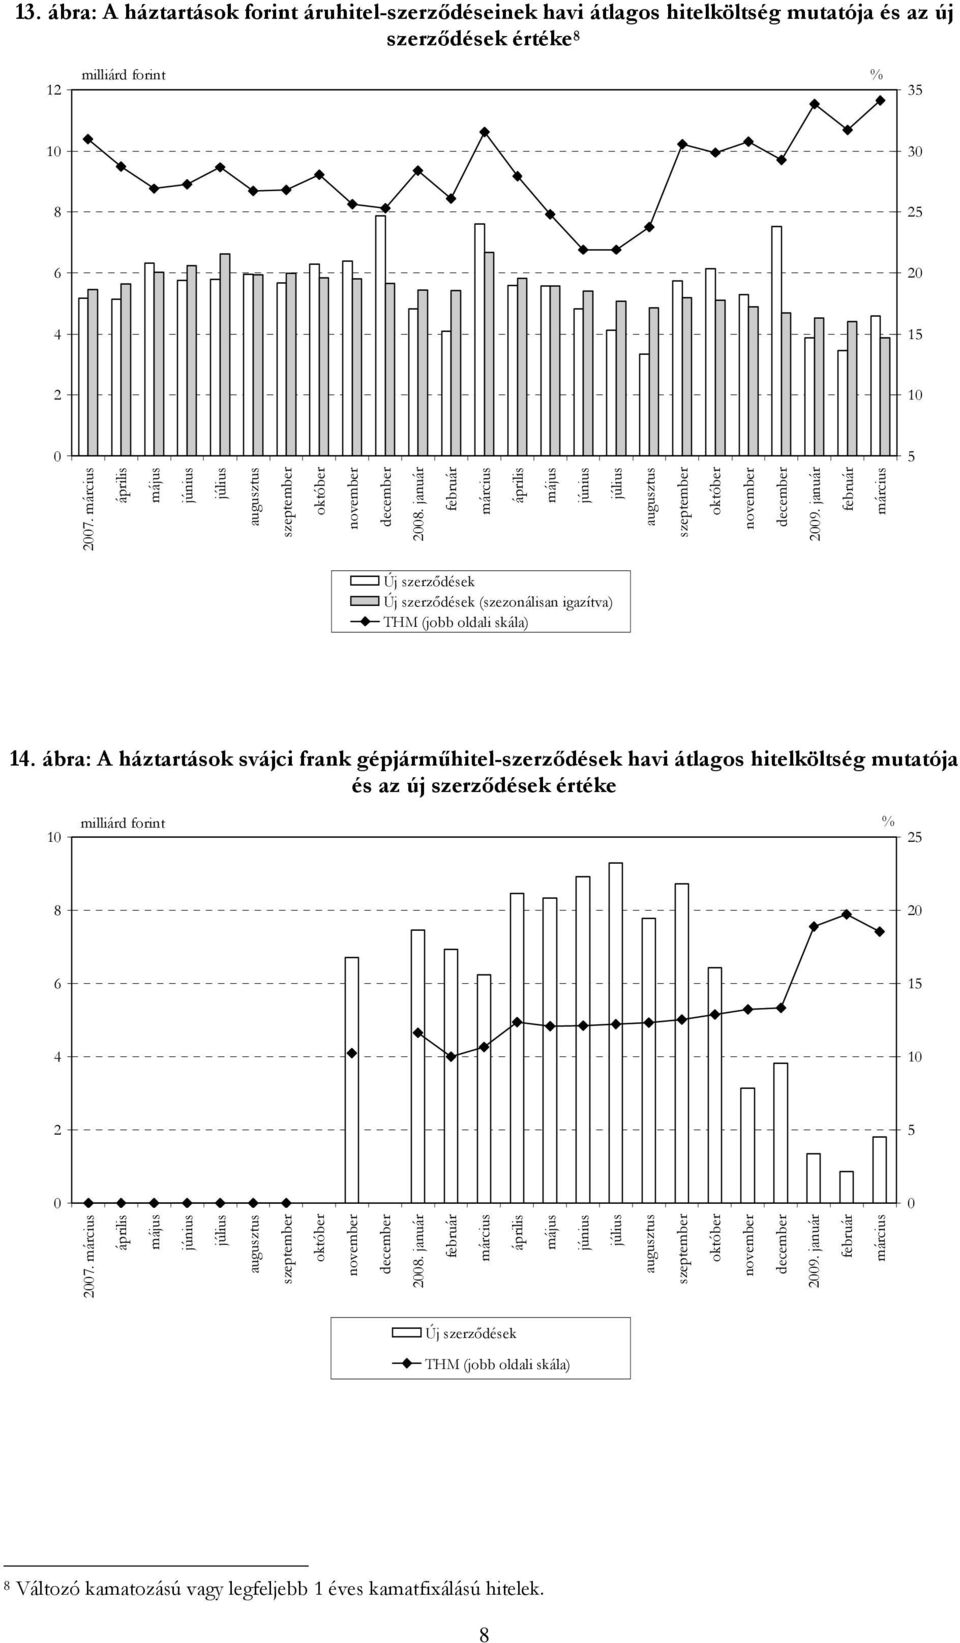 ábra: A háztartások svájci frank gépjárműhitel-szerződések havi átlagos hitelköltség mutatója